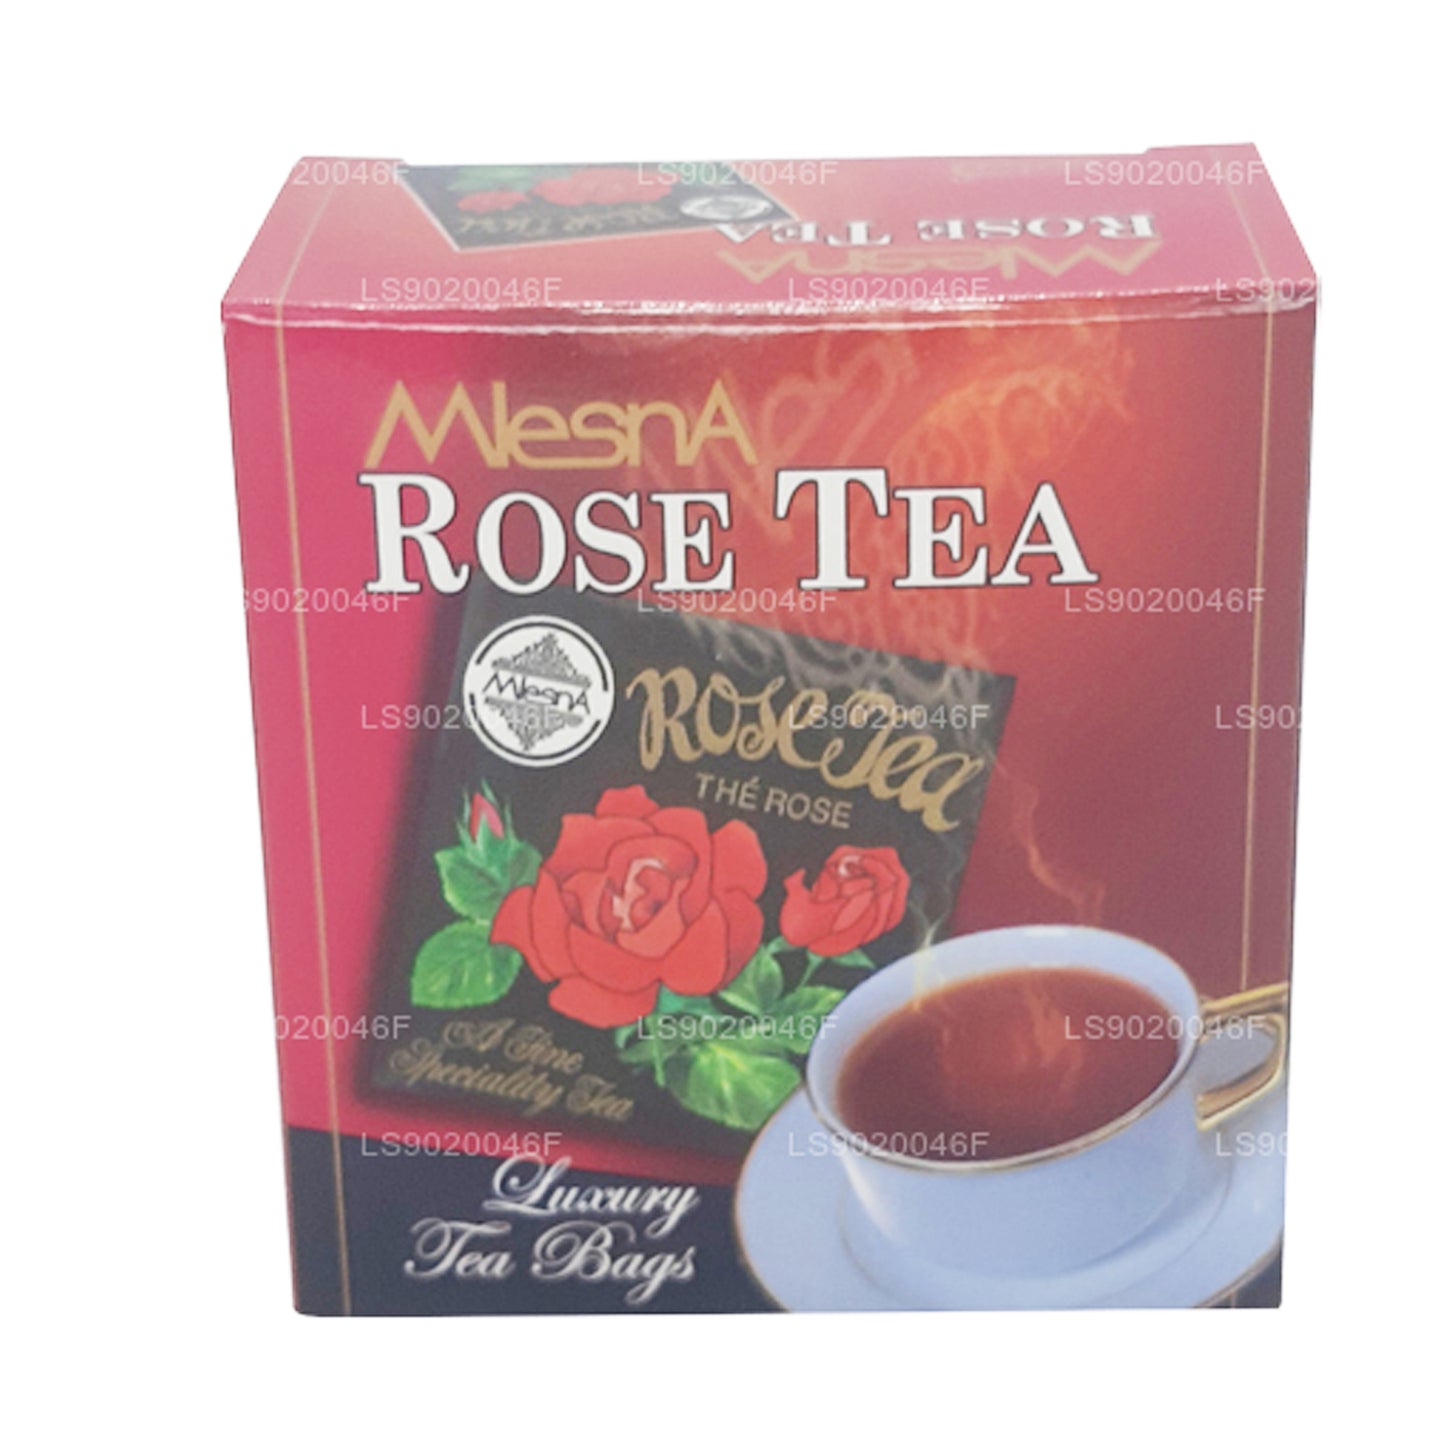 Mlesna Rose Tea (20g) 10 个豪华茶包